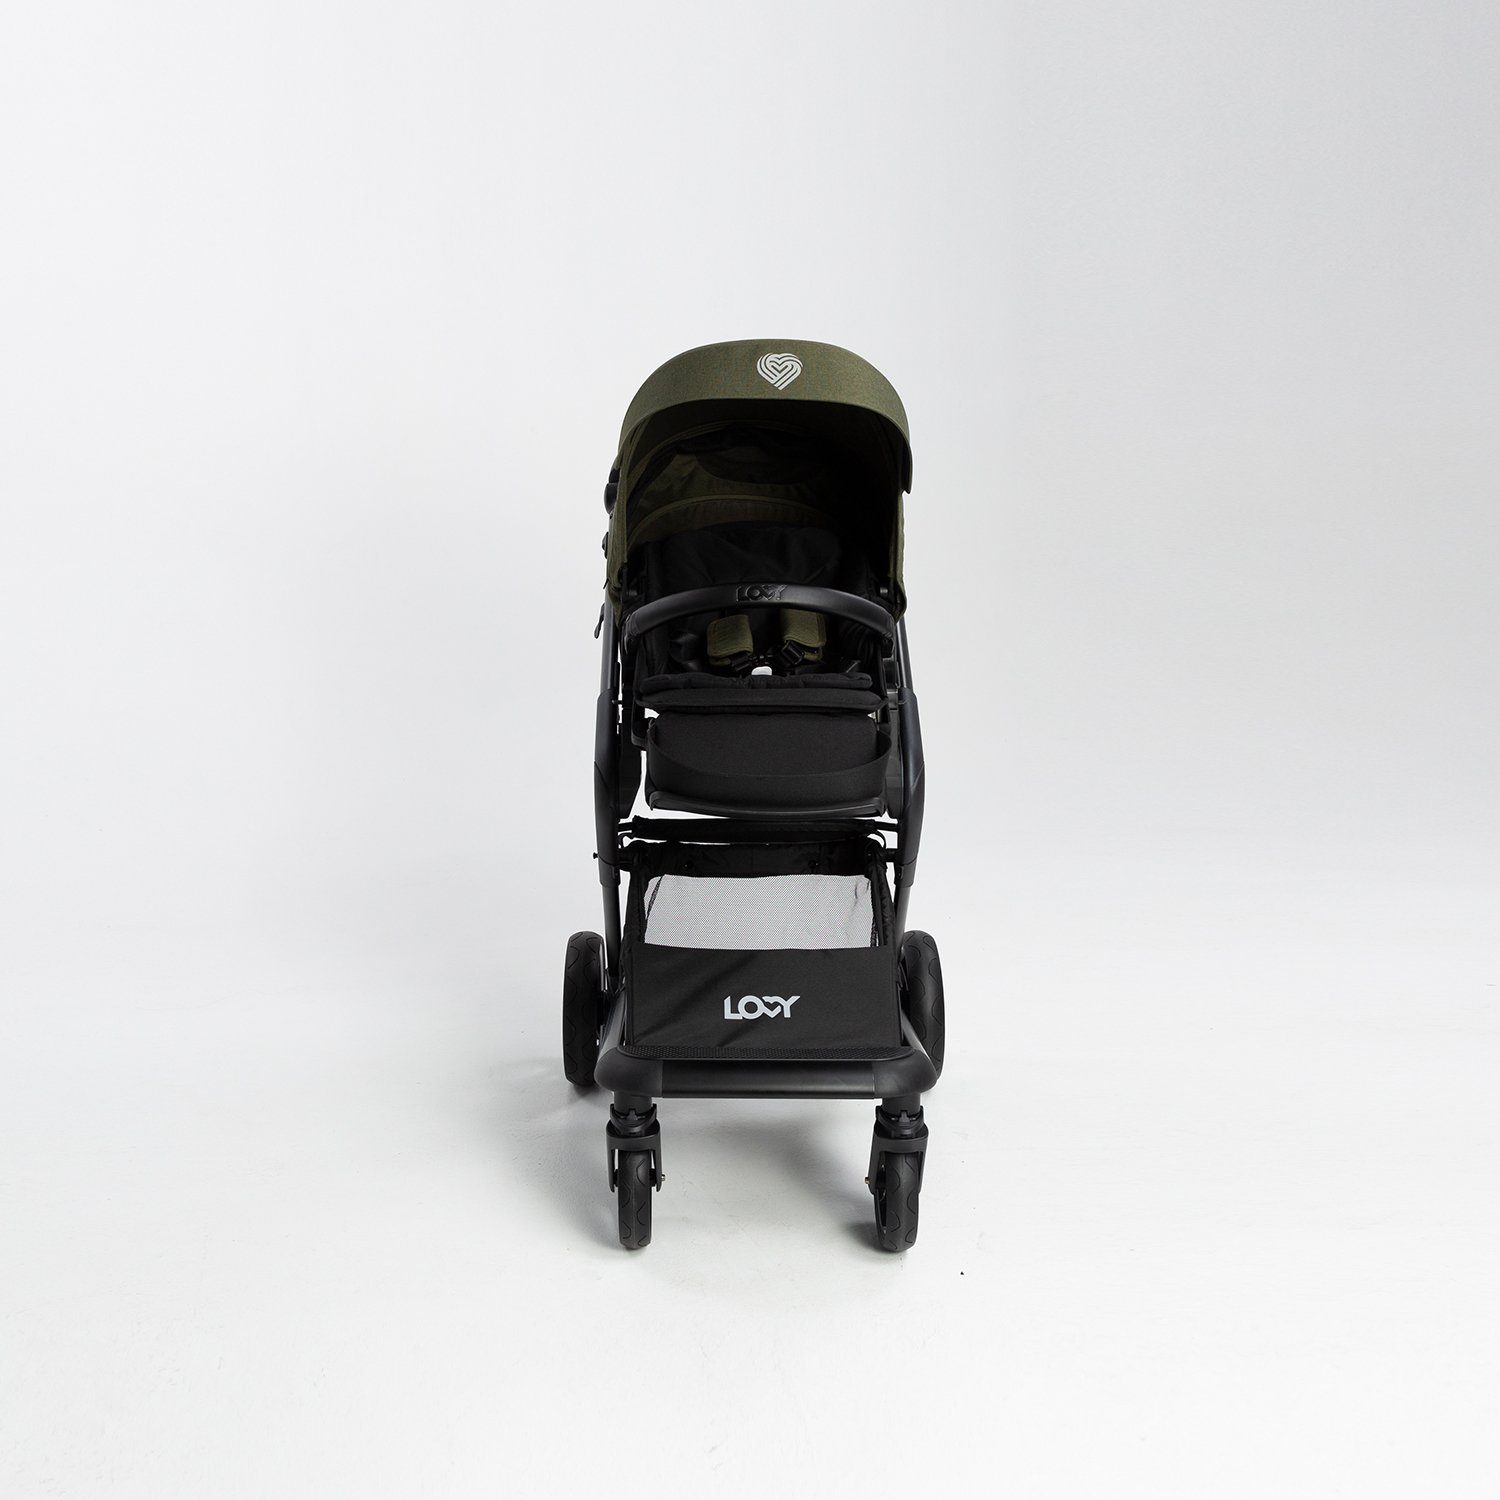 Wickeltasche, 1 2 Snacke und Moskitonetz. Regenschutz ein Kombi-Kinderwagen Babywanne, Eingeschlossen: Green Set. LOVY in Sportsitz,